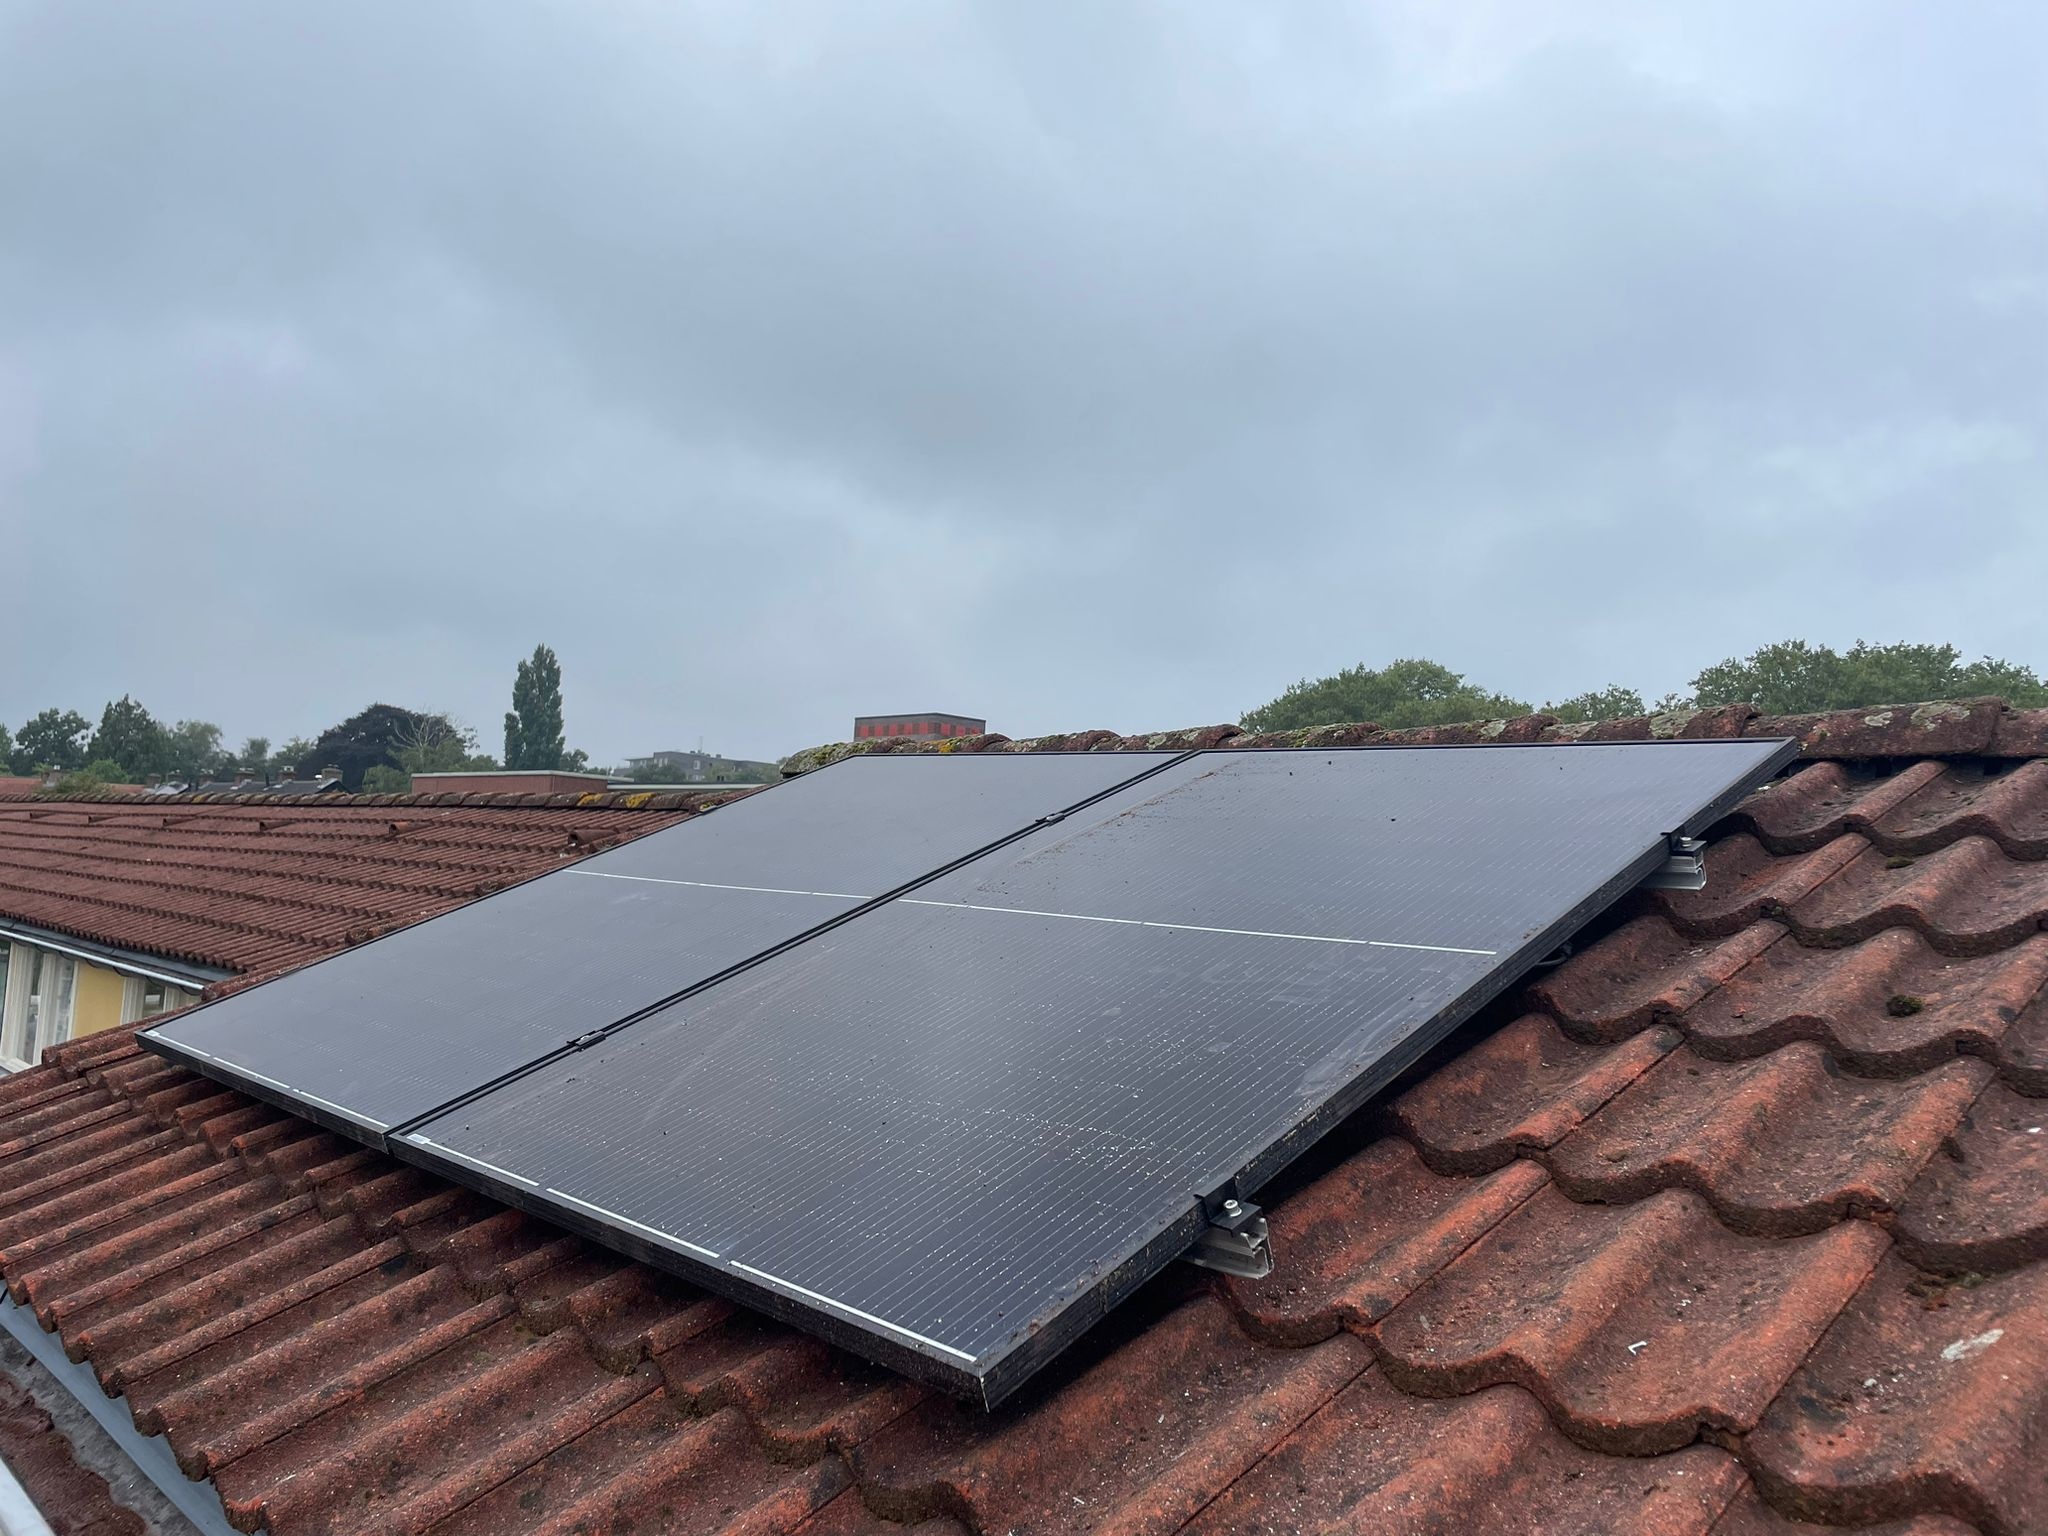 Support passe toit pour 2 câbles solaires